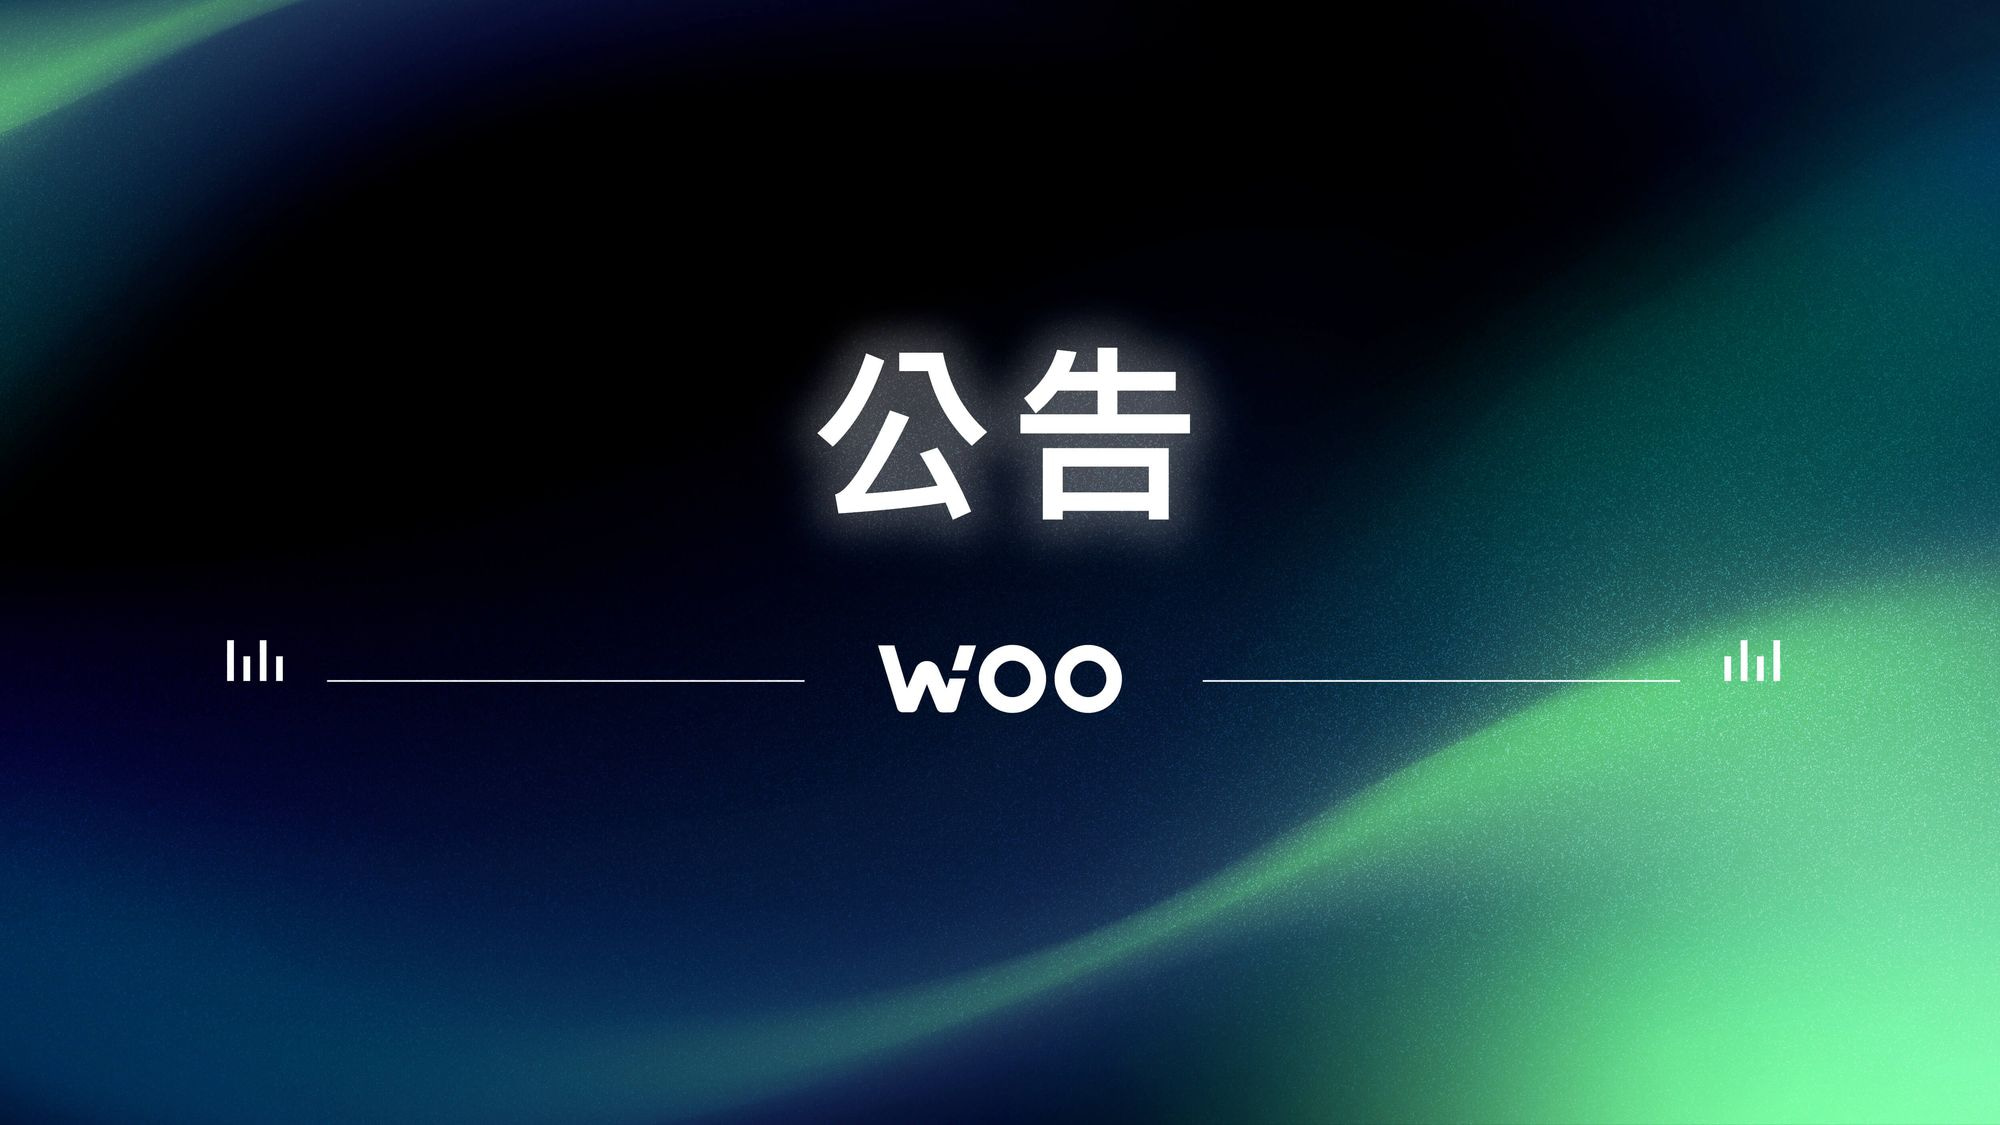 WOO 向三箭資本回購其股份和代幣